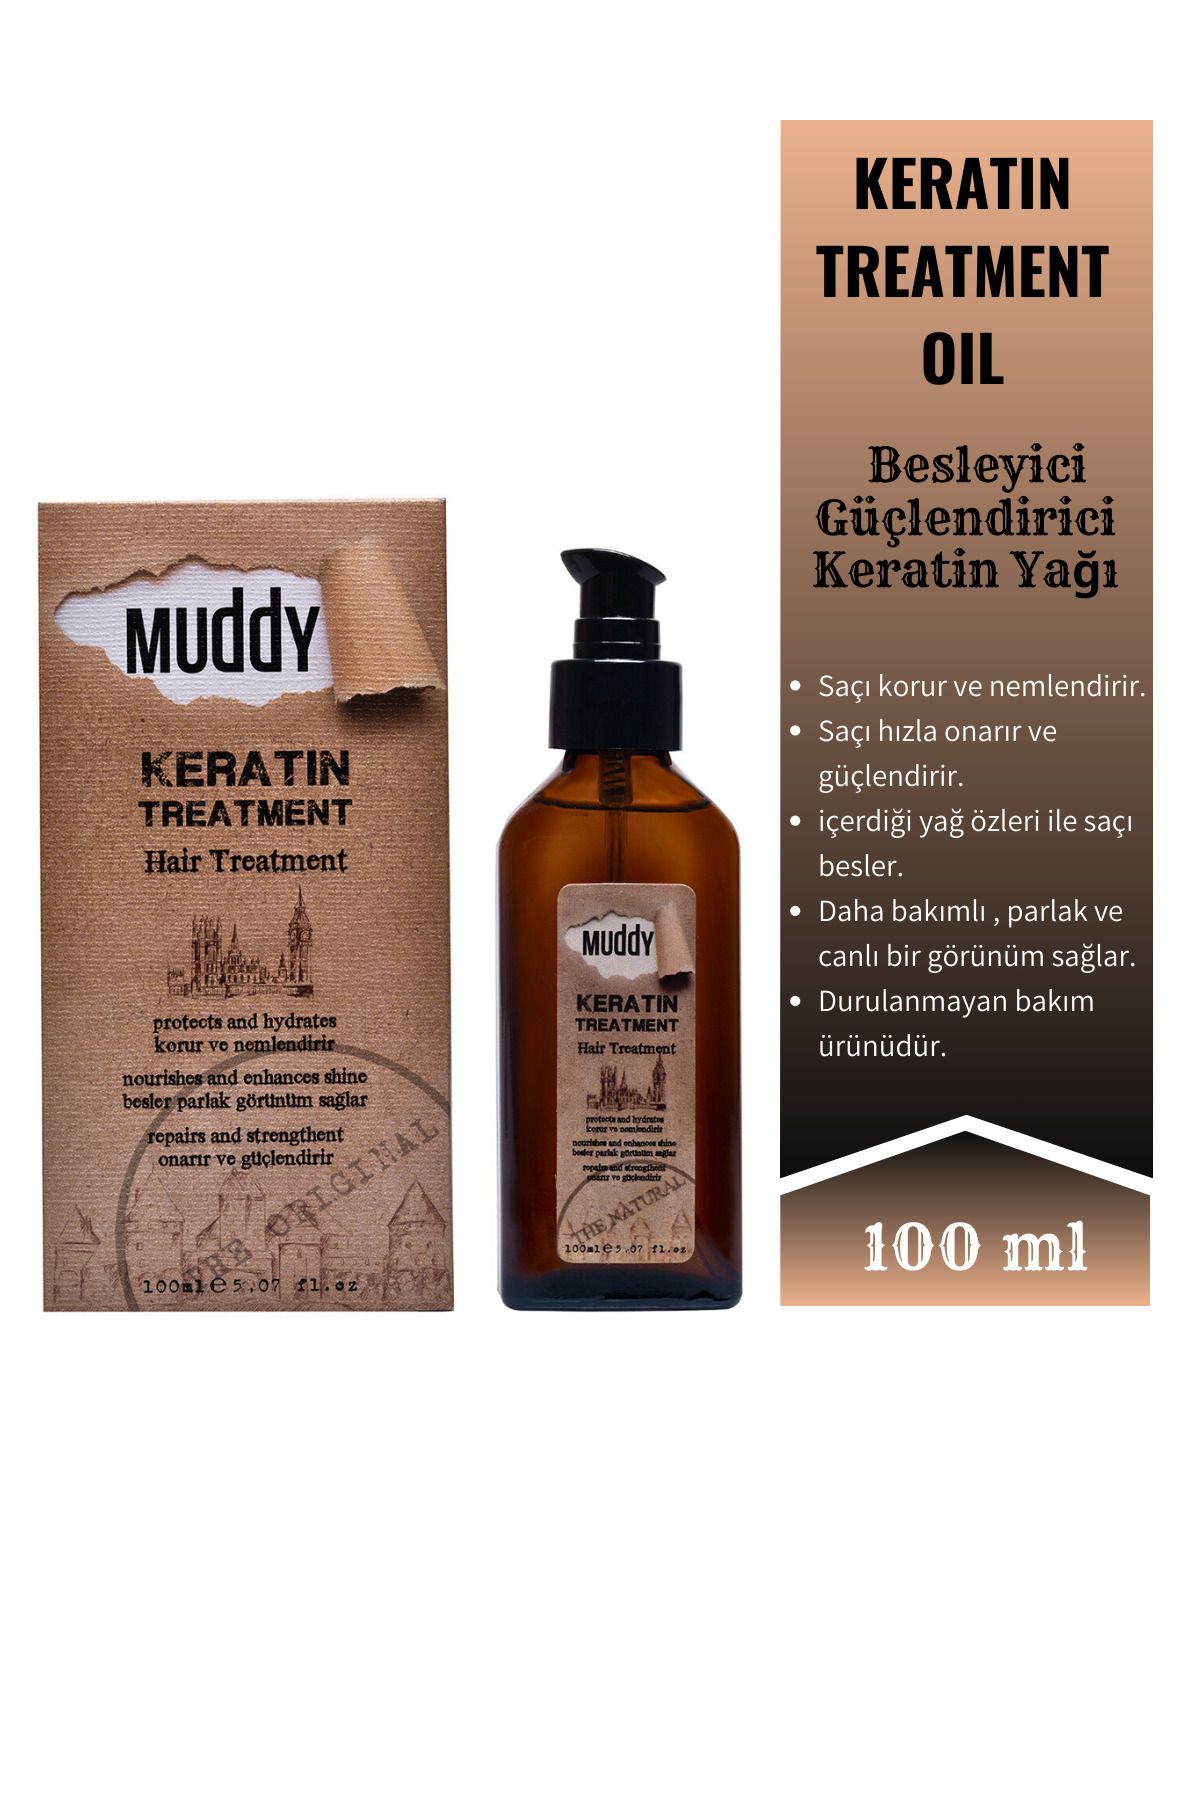 Muddy Keratin Treatment Oil Kırılma Ve Kopma Karşıtı Canlı Ve Parlak Görünüm Yağı 100 ml